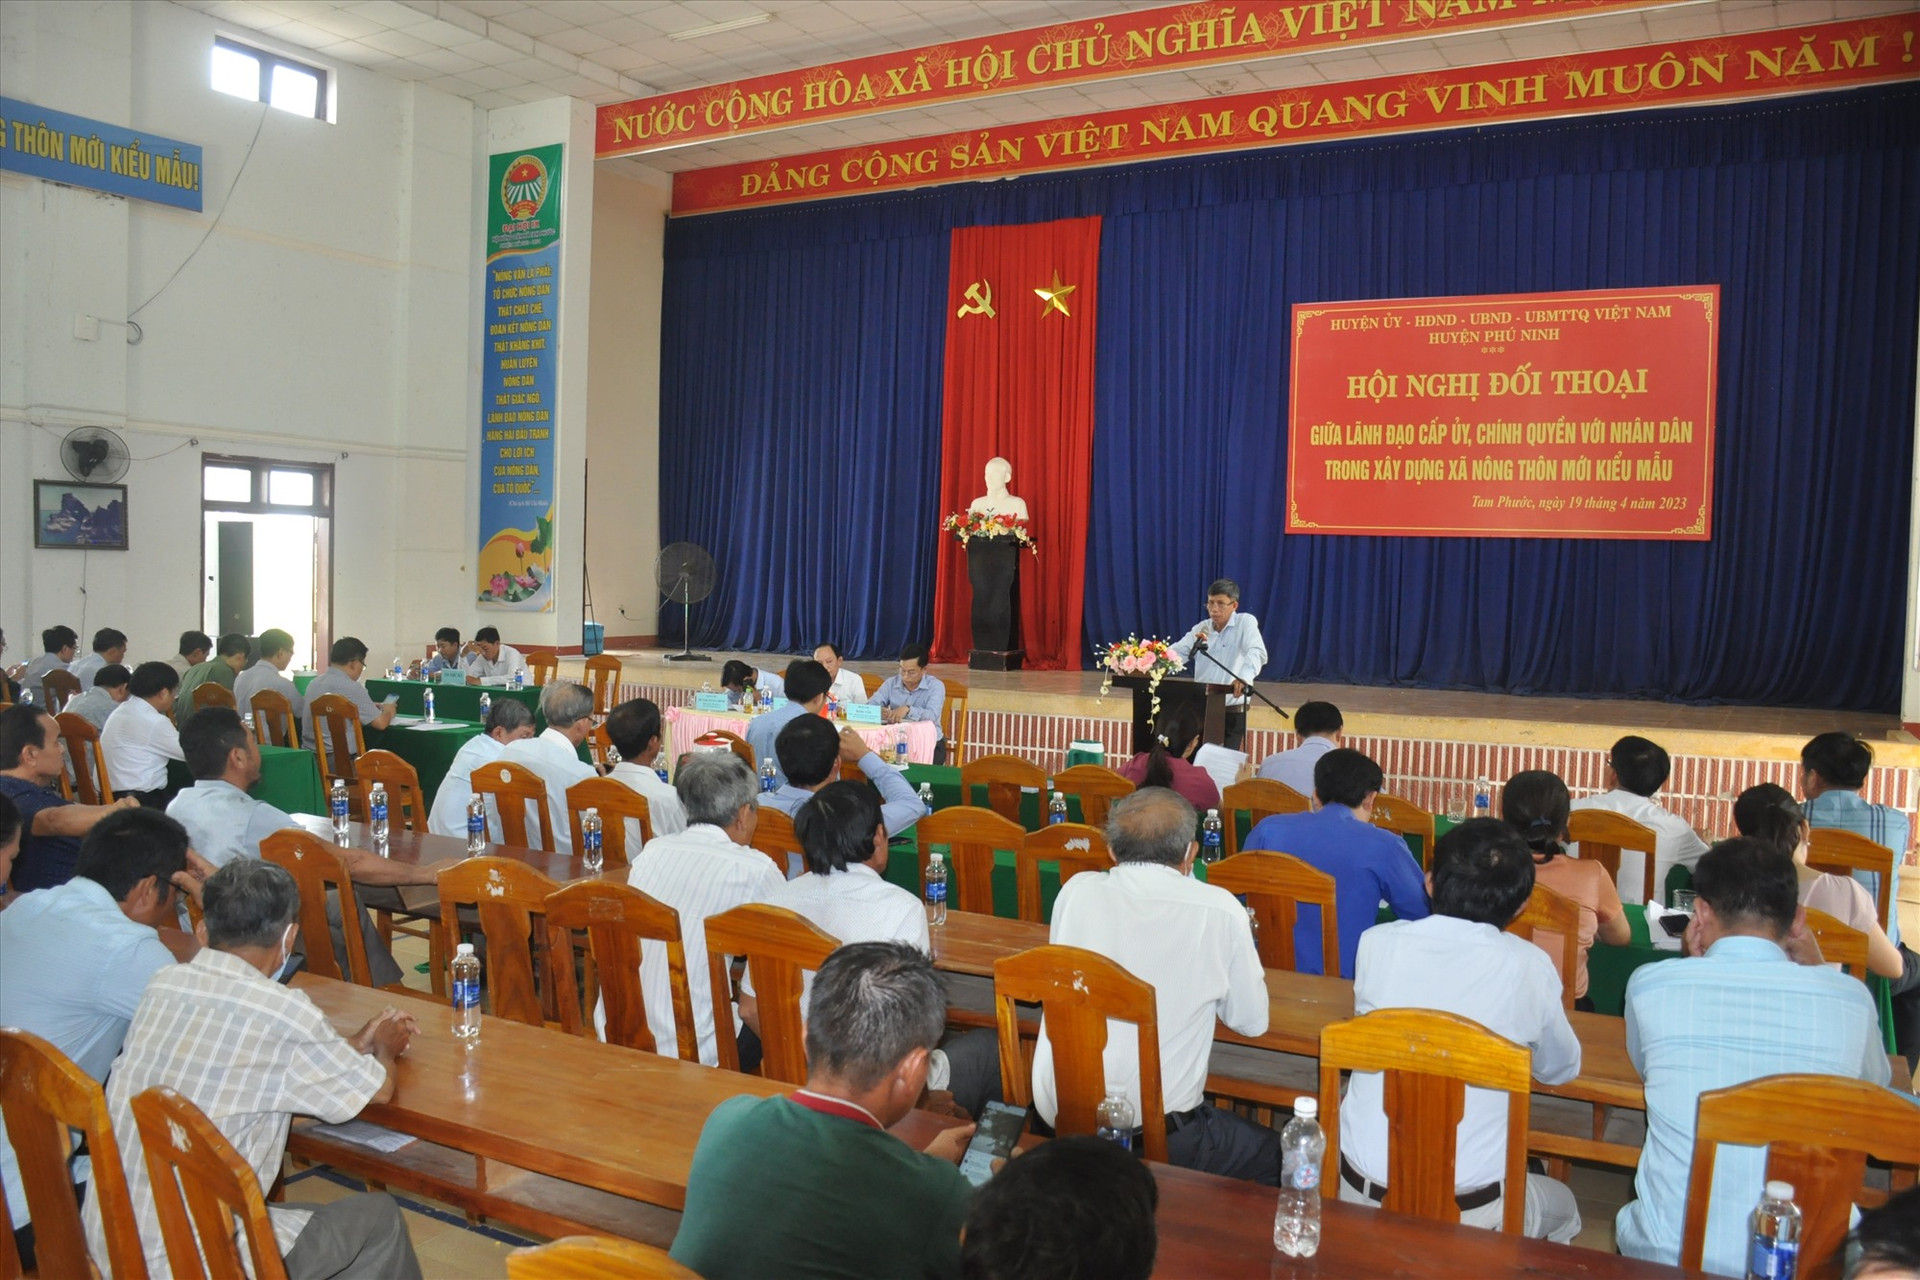 Thời gian qua, người đứng đầu cấp ủy, chính quyền huyện Phú Ninh tổ chức nhiều cuộc đối thoại với nhân dân ở các khu dân cư để tháo gỡ các khó khăn, vướng mắc trong xây dựng NTM nâng cao, kiểu mẫu. Ảnh: N.Đ